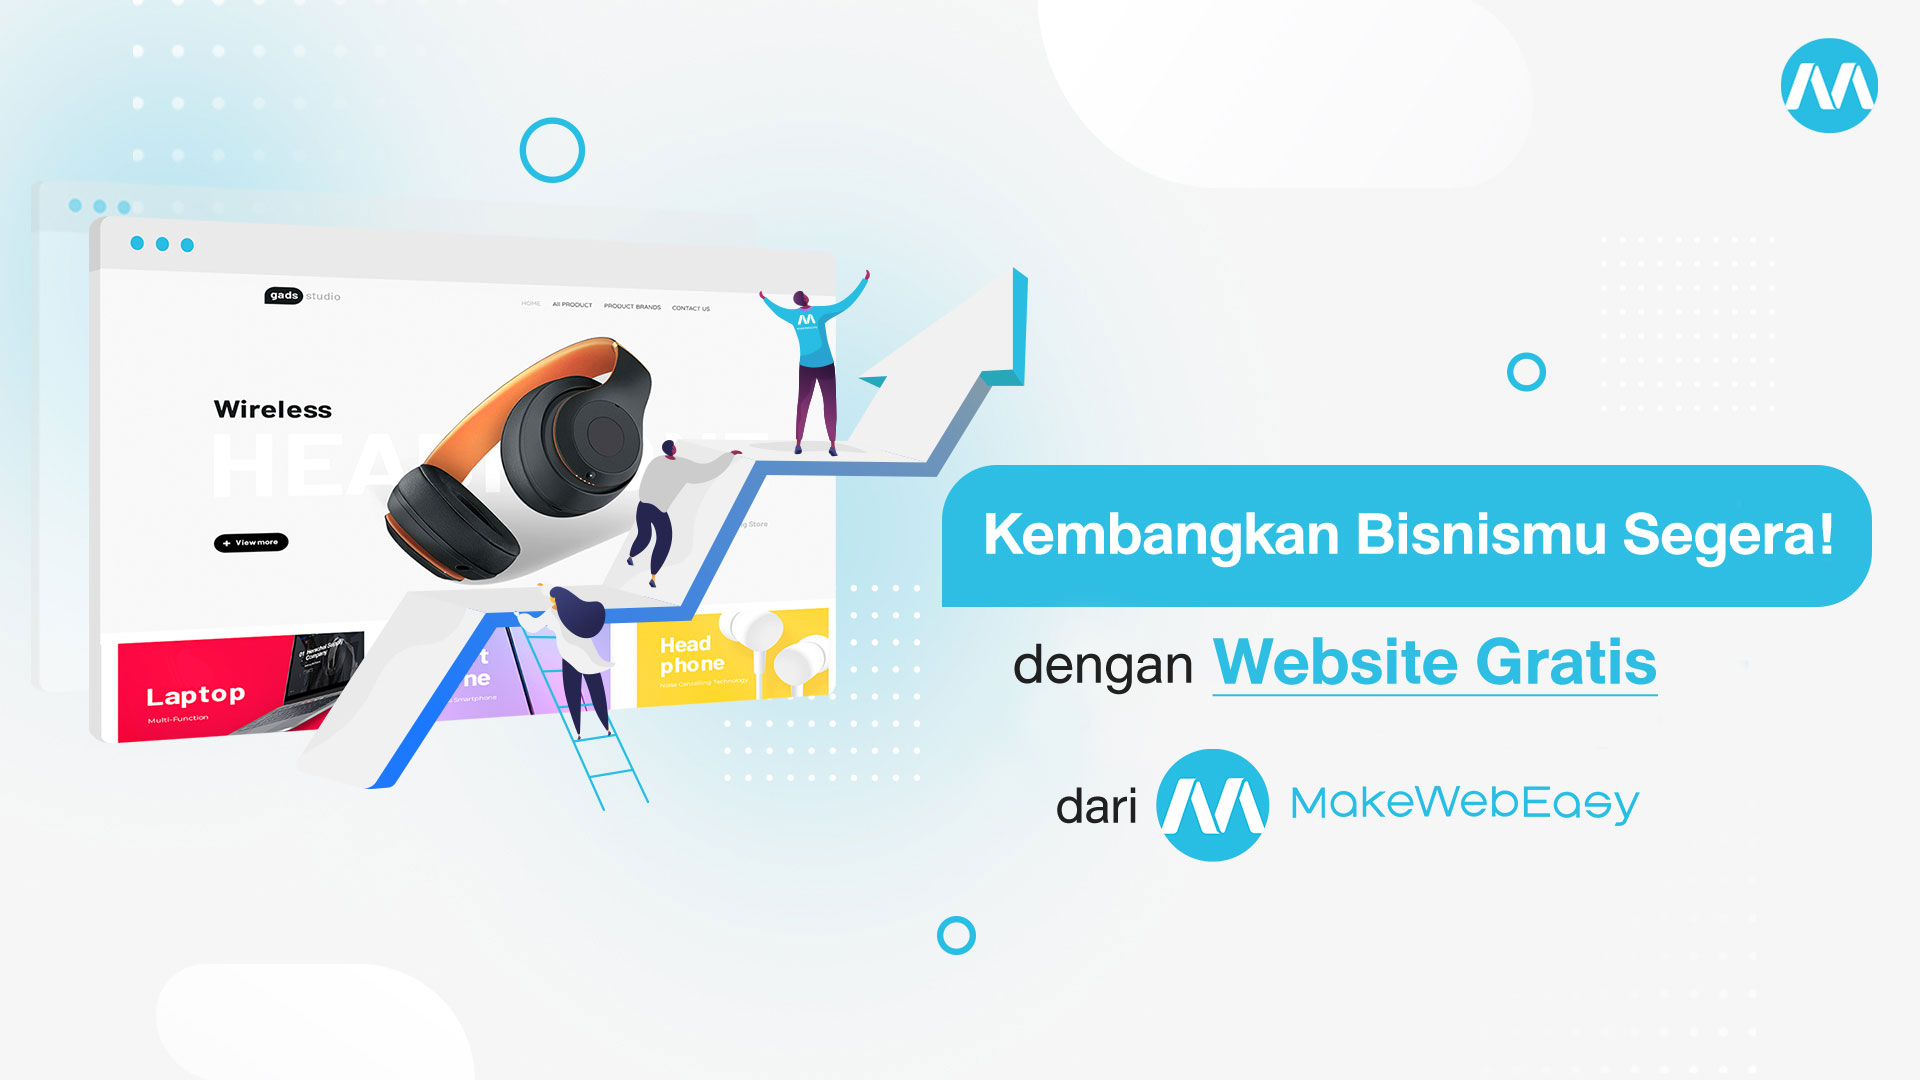 Kembangkan Bisnismu dengan Membuat Website Gratis dari MakeWebEasy_Jasa Pembuatan Website_MakeWebEasy Indonesia